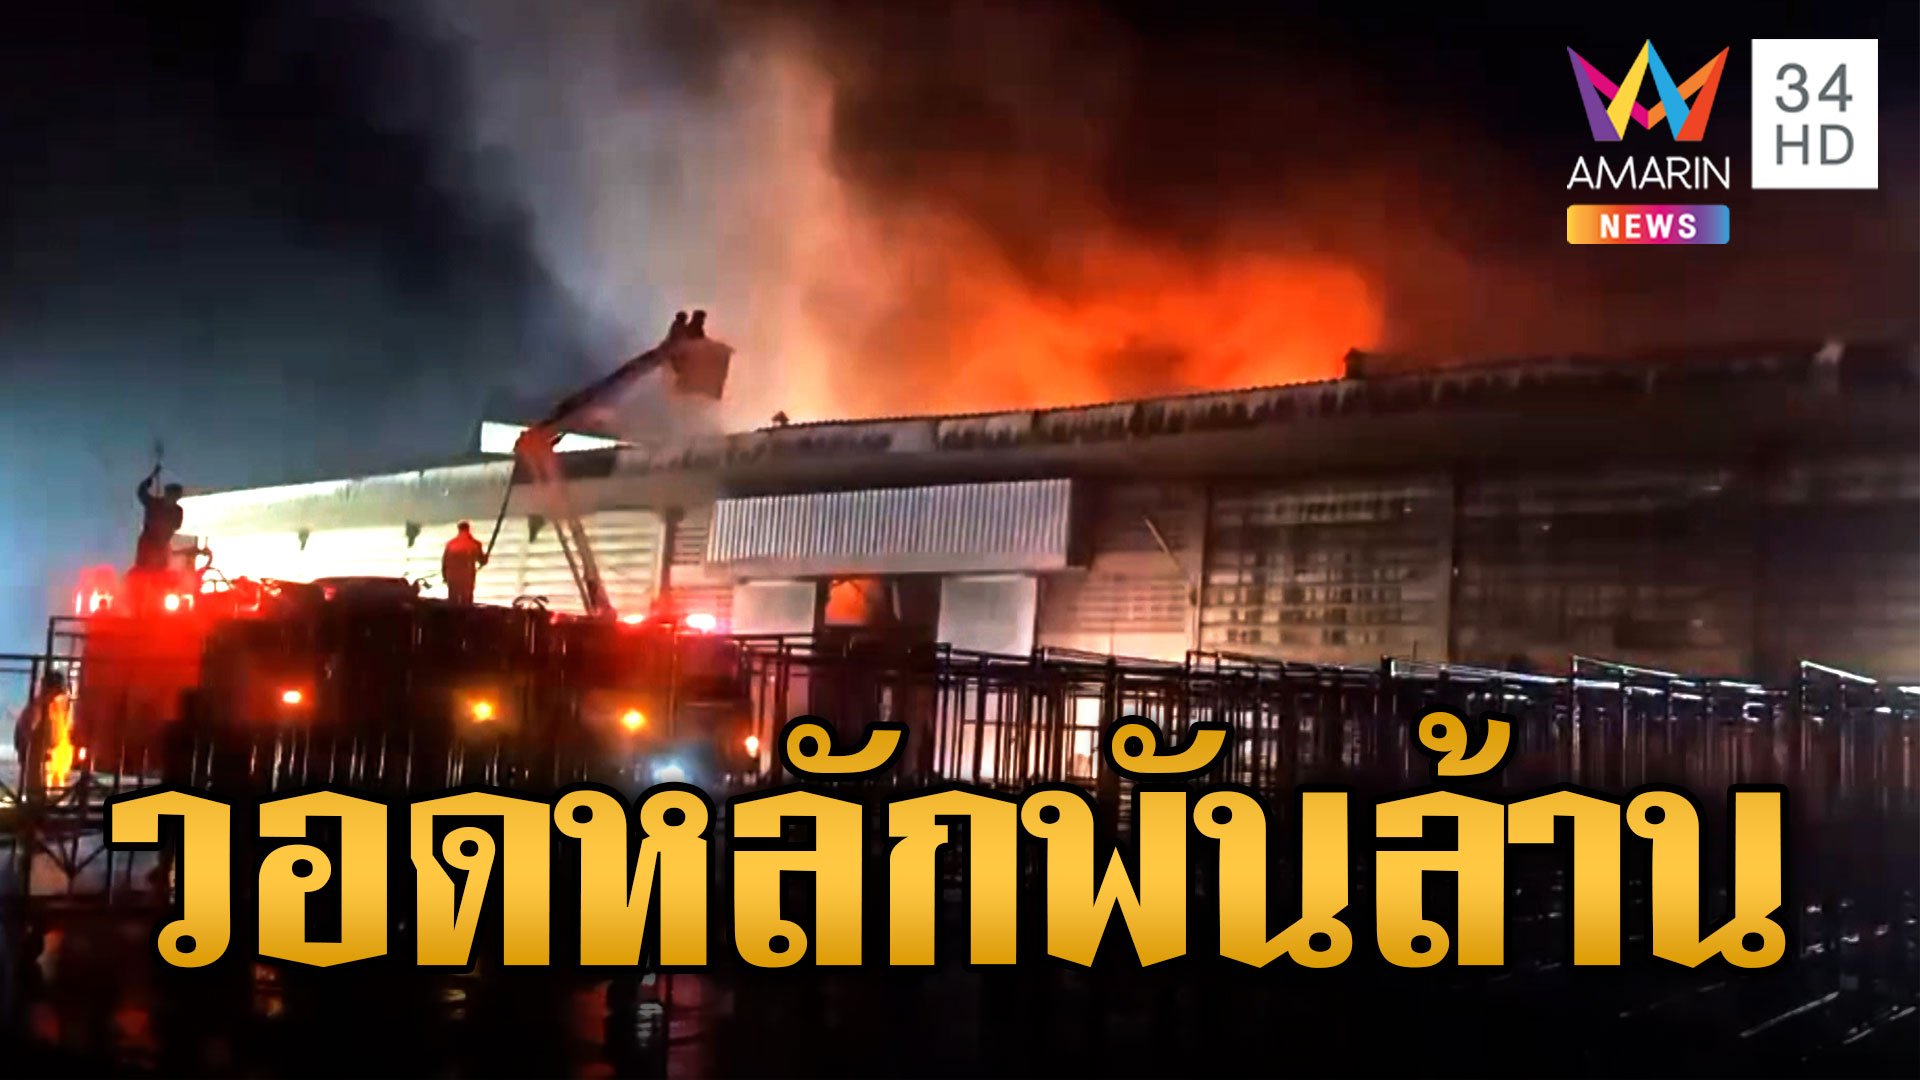 ไฟไหม้โรงงานผลิตวุ้นเส้น เสียหายพันล้าน ไฟท่วมทั้งโกดัง | ข่าวอรุณอมรินทร์ | 24 ก.ค. 66 | AMARIN TVHD34